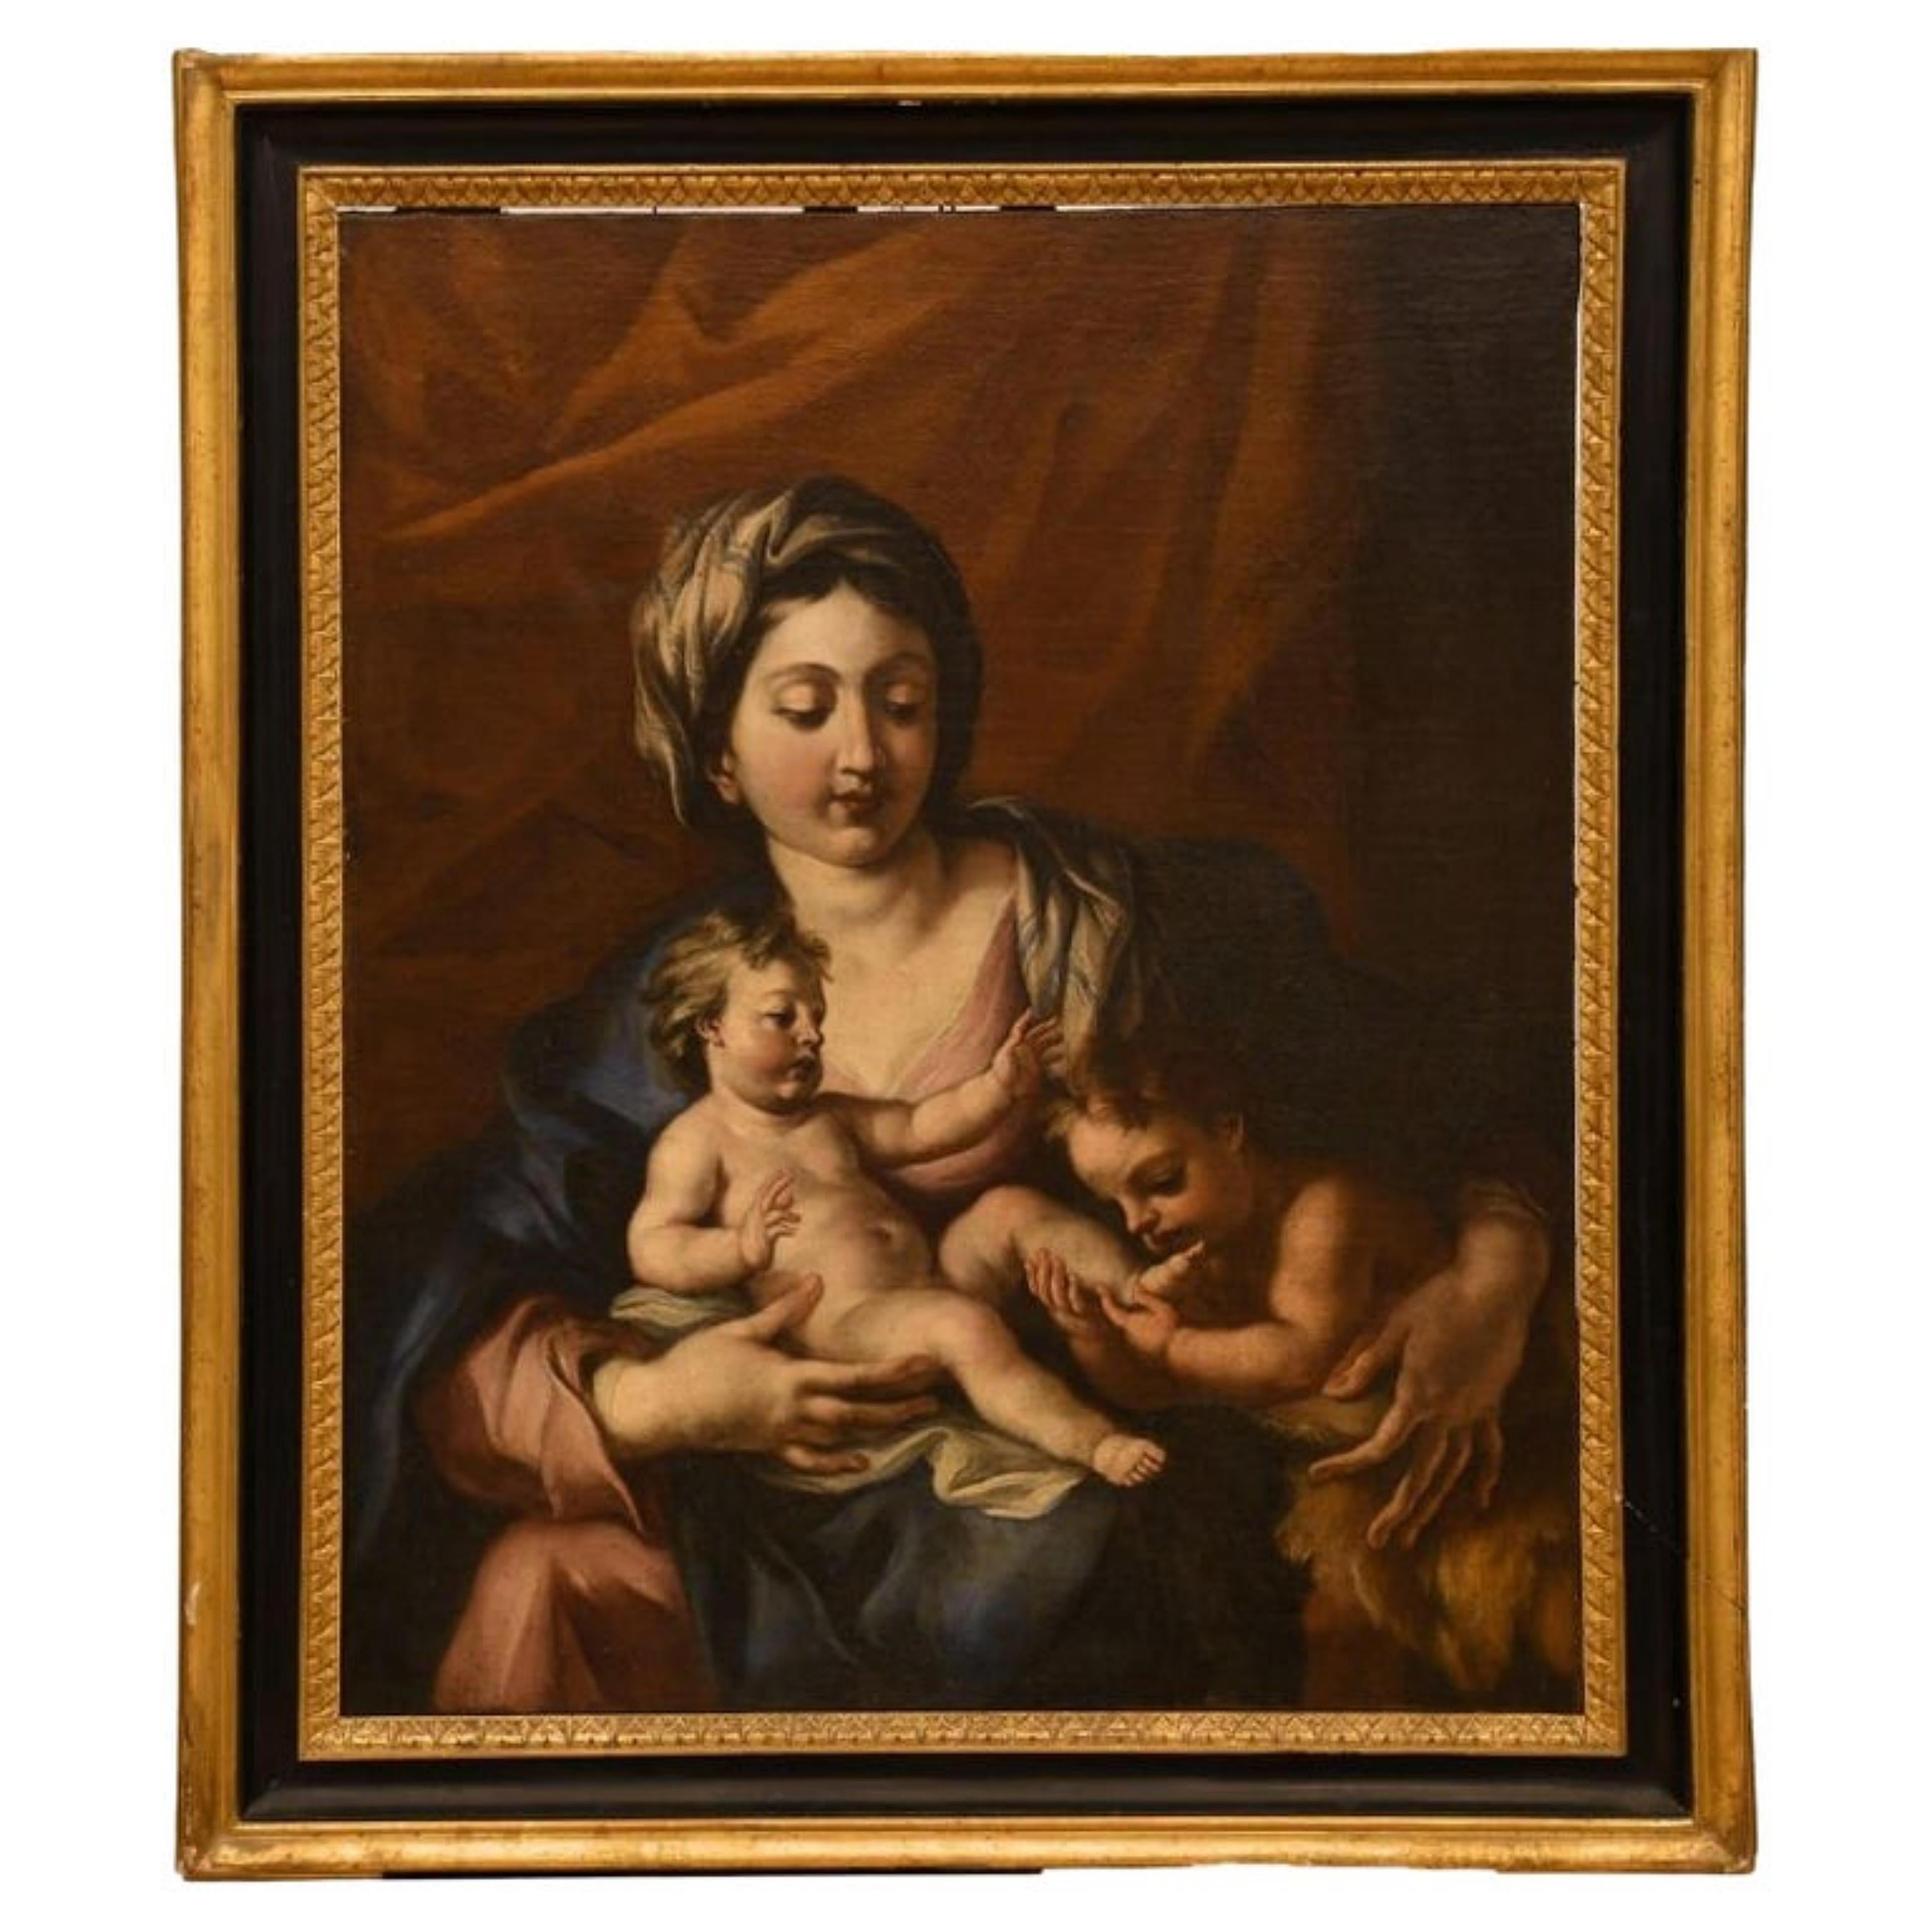 Mittelitalienischer Maler des 18. Jahrhunderts - Madonna mit dem betenden Saint John
Ölgemälde auf Leinwand
Abmessungen:
63x76 cm
guter Zustand